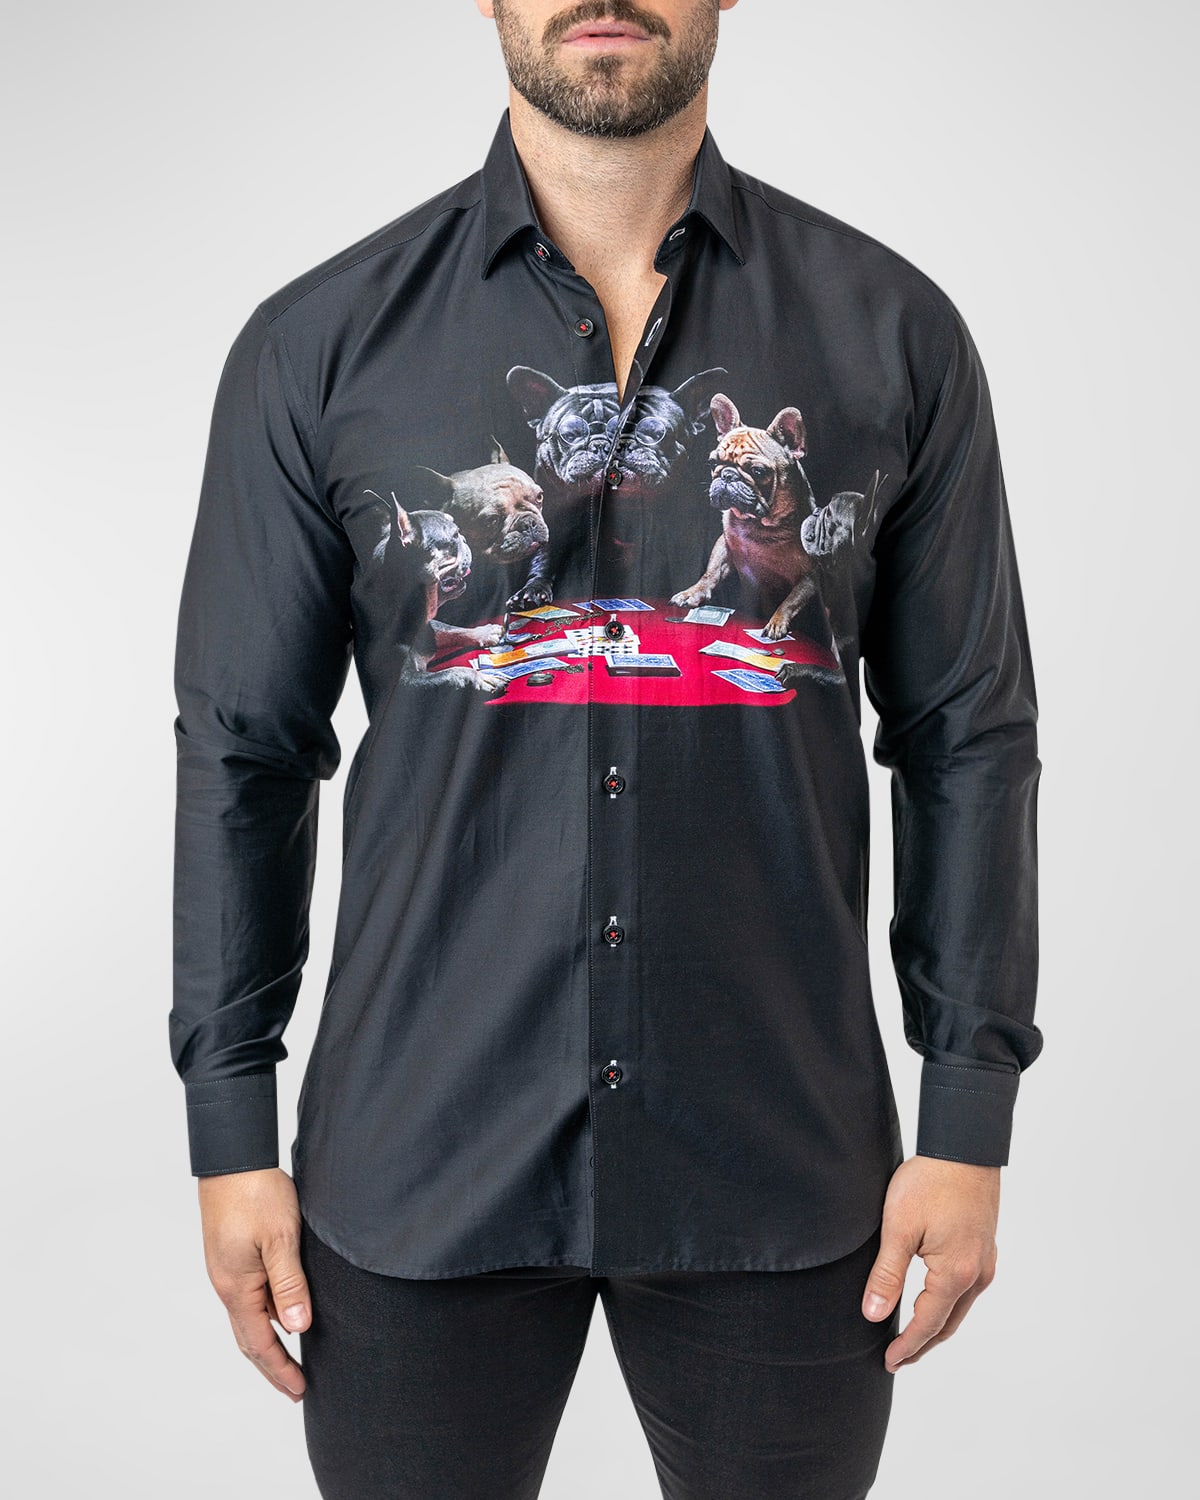 Men's Fibonacci Poker Dogs Dress Shirt